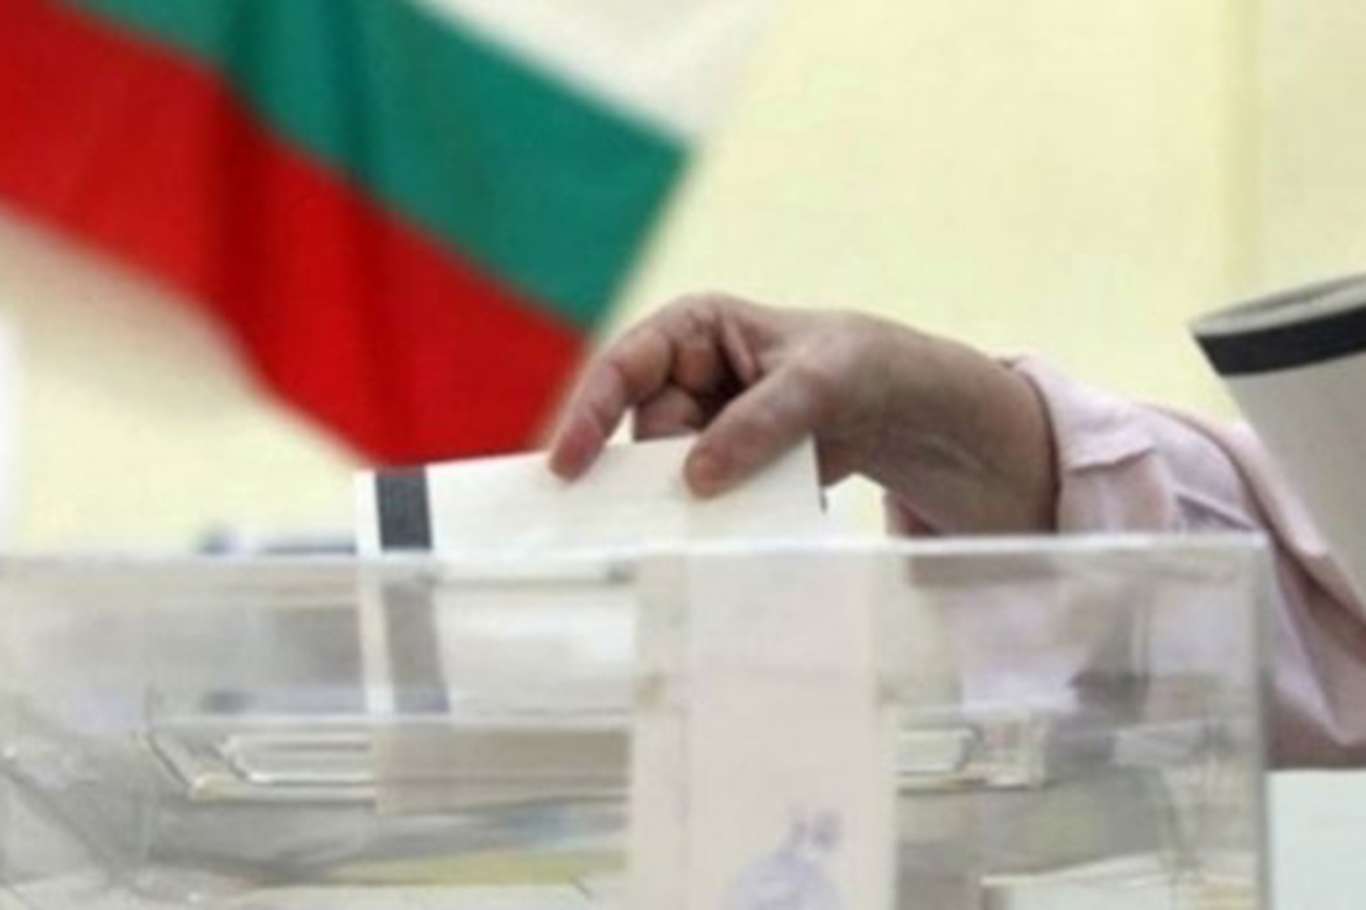 Bulgaristan’da erken genel seçimin ardından parlamentoya 7 parti girdi